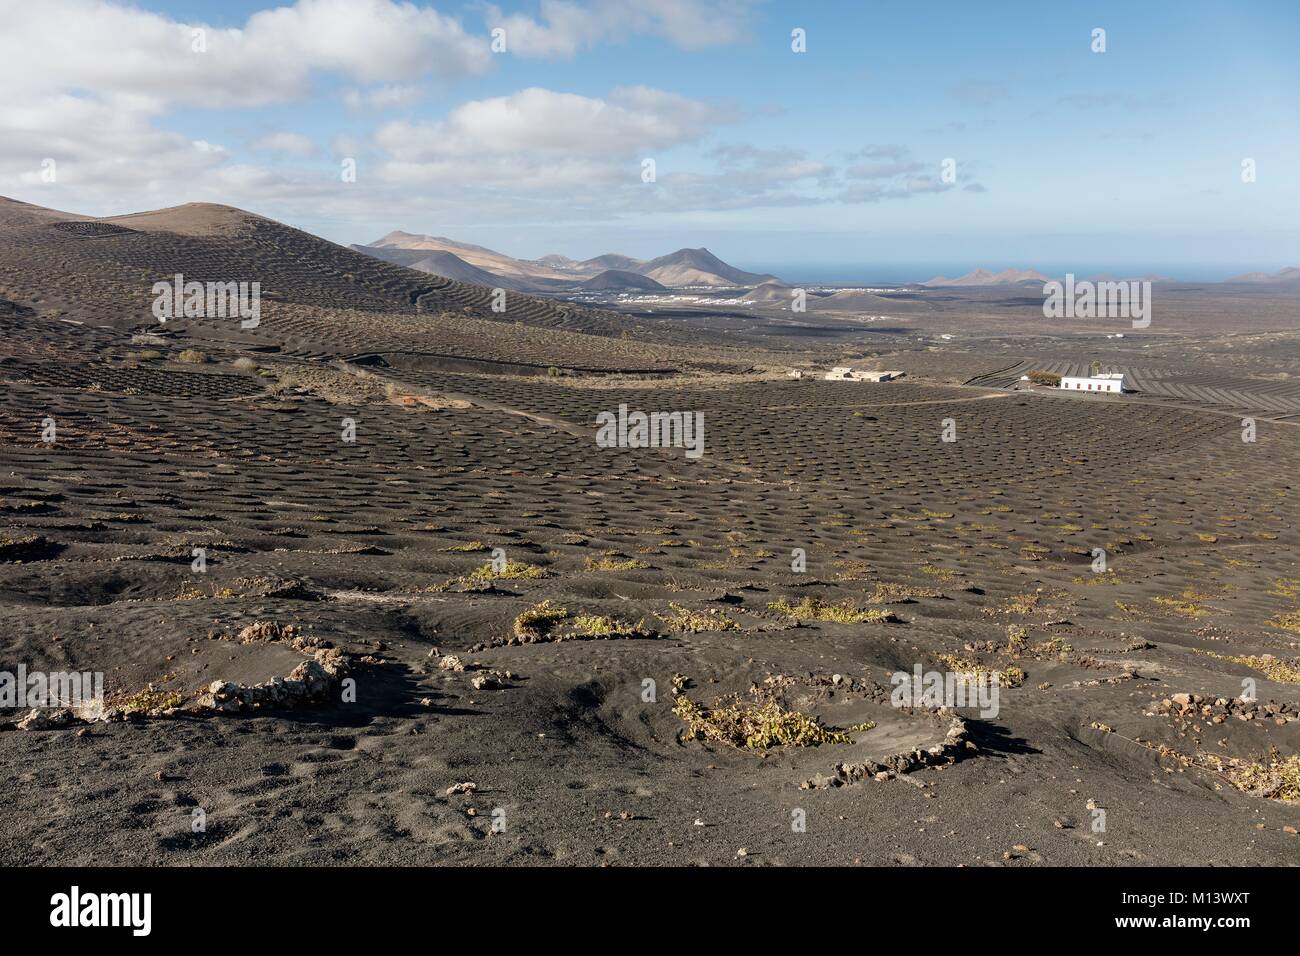 Spagna Isole Canarie Lanzarote Island, La Geria, vigneti protetti da stone pareti basse in lapilli (sabbia vulcanica) prima di vulcani Foto Stock